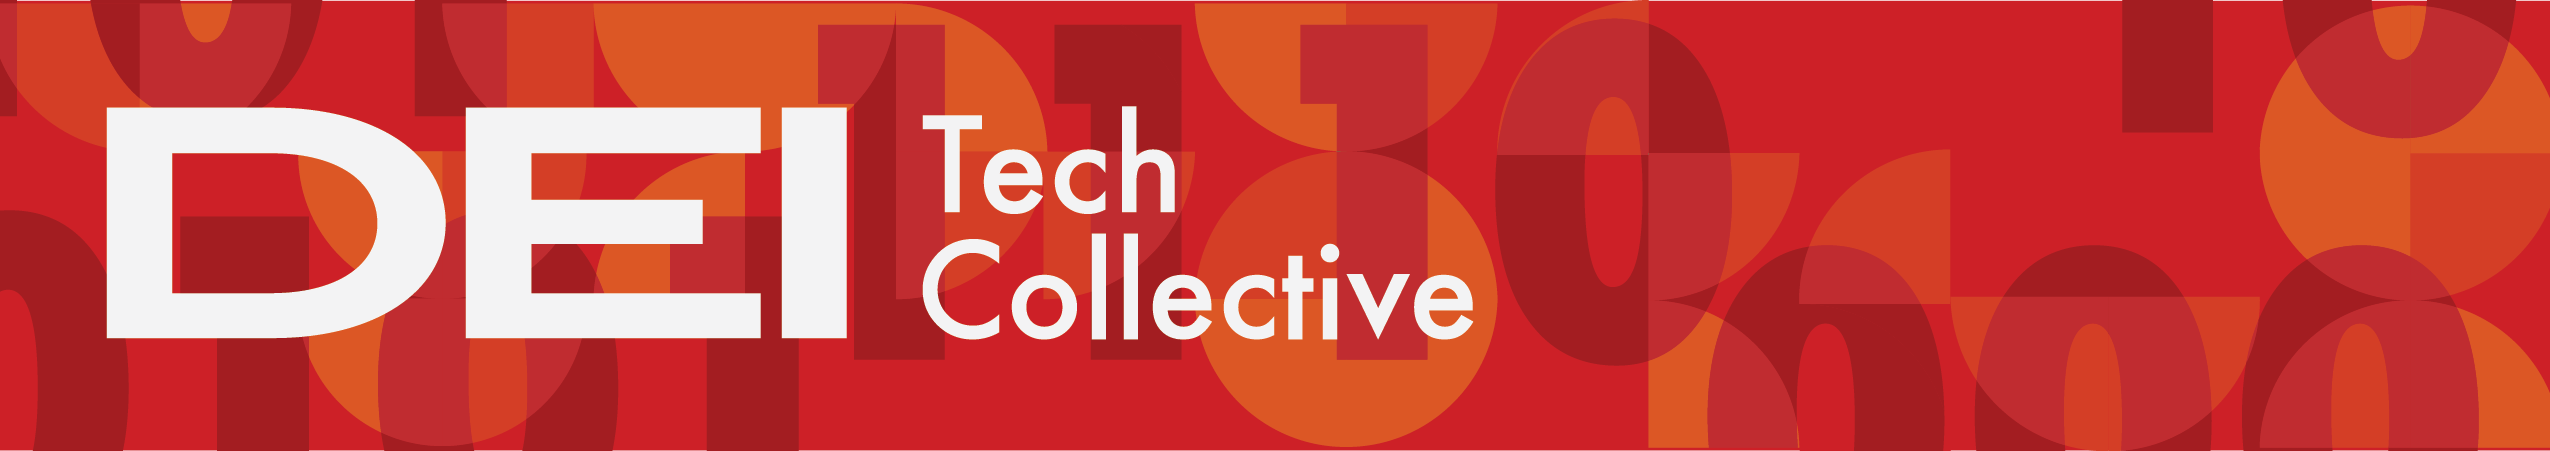 DEI Tech Collective logo